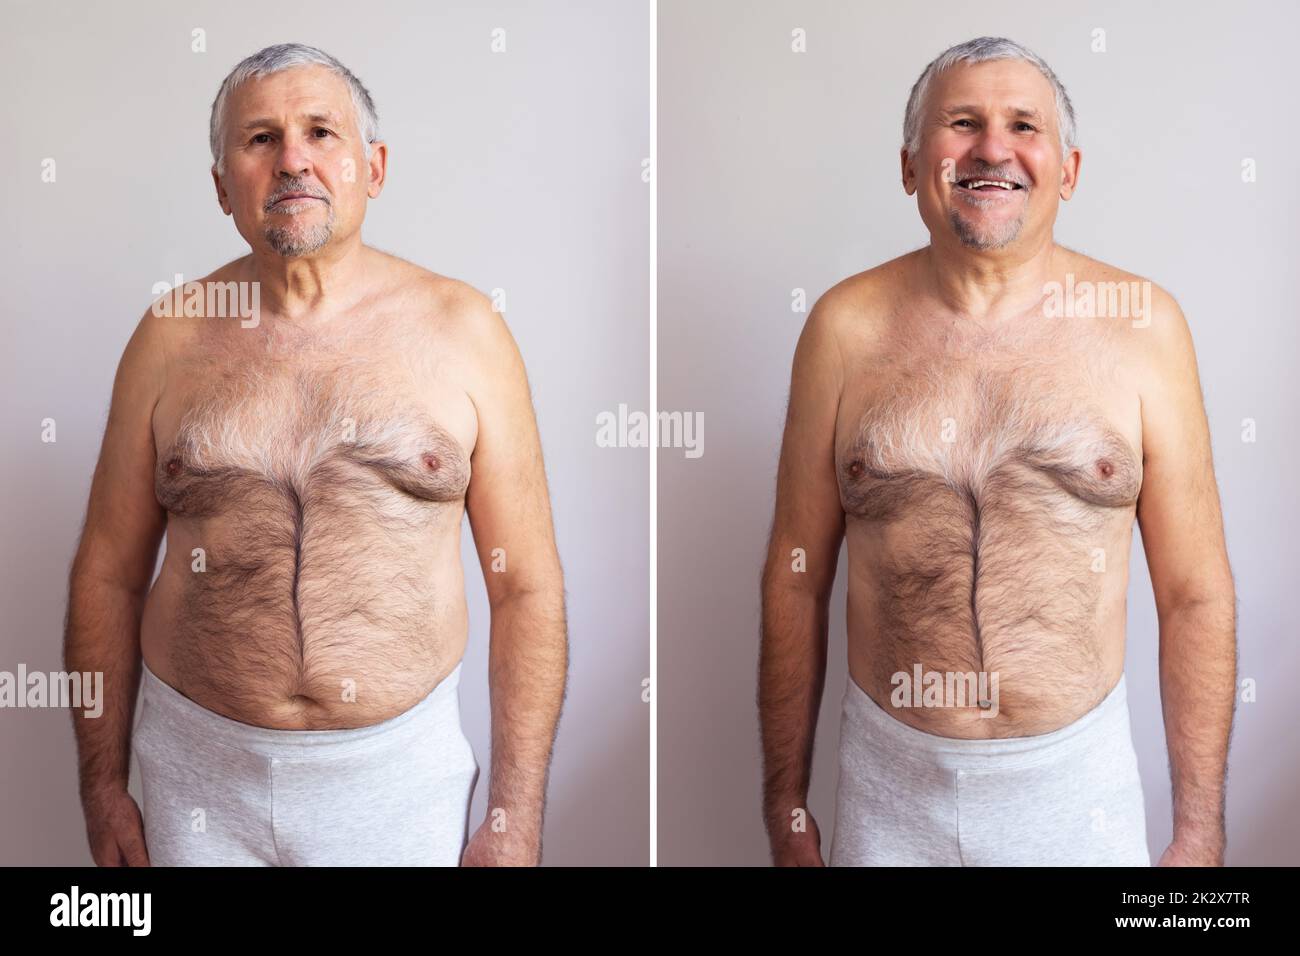 Homme avant et après perte de poids Banque de photographies et d ...